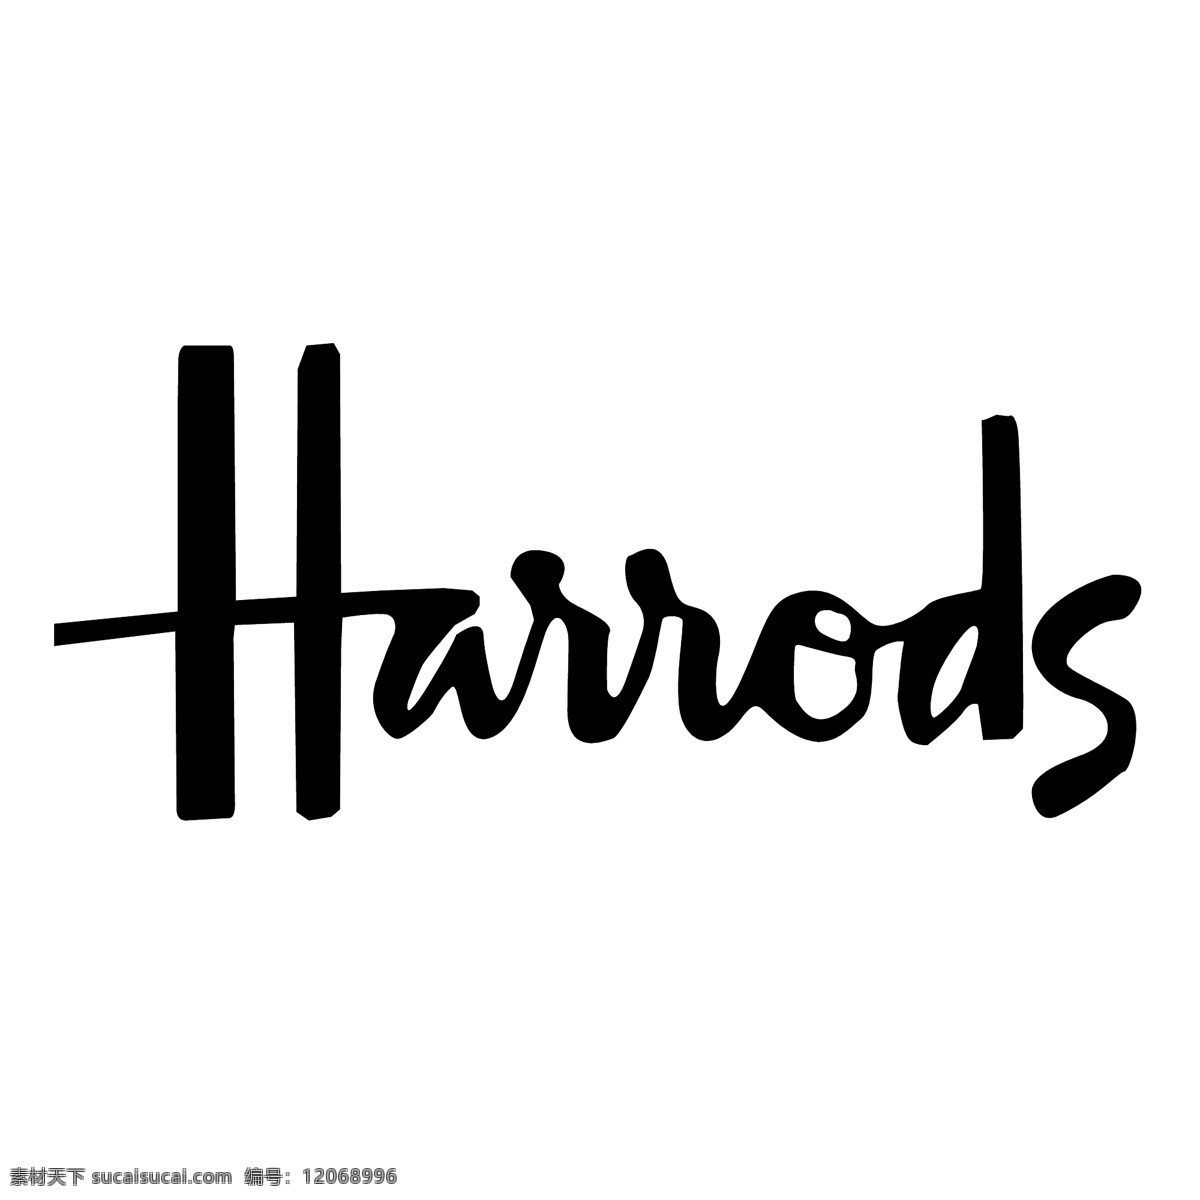 哈罗德 百货公司 罗斯 无 标志 标识 psd源文件 logo设计